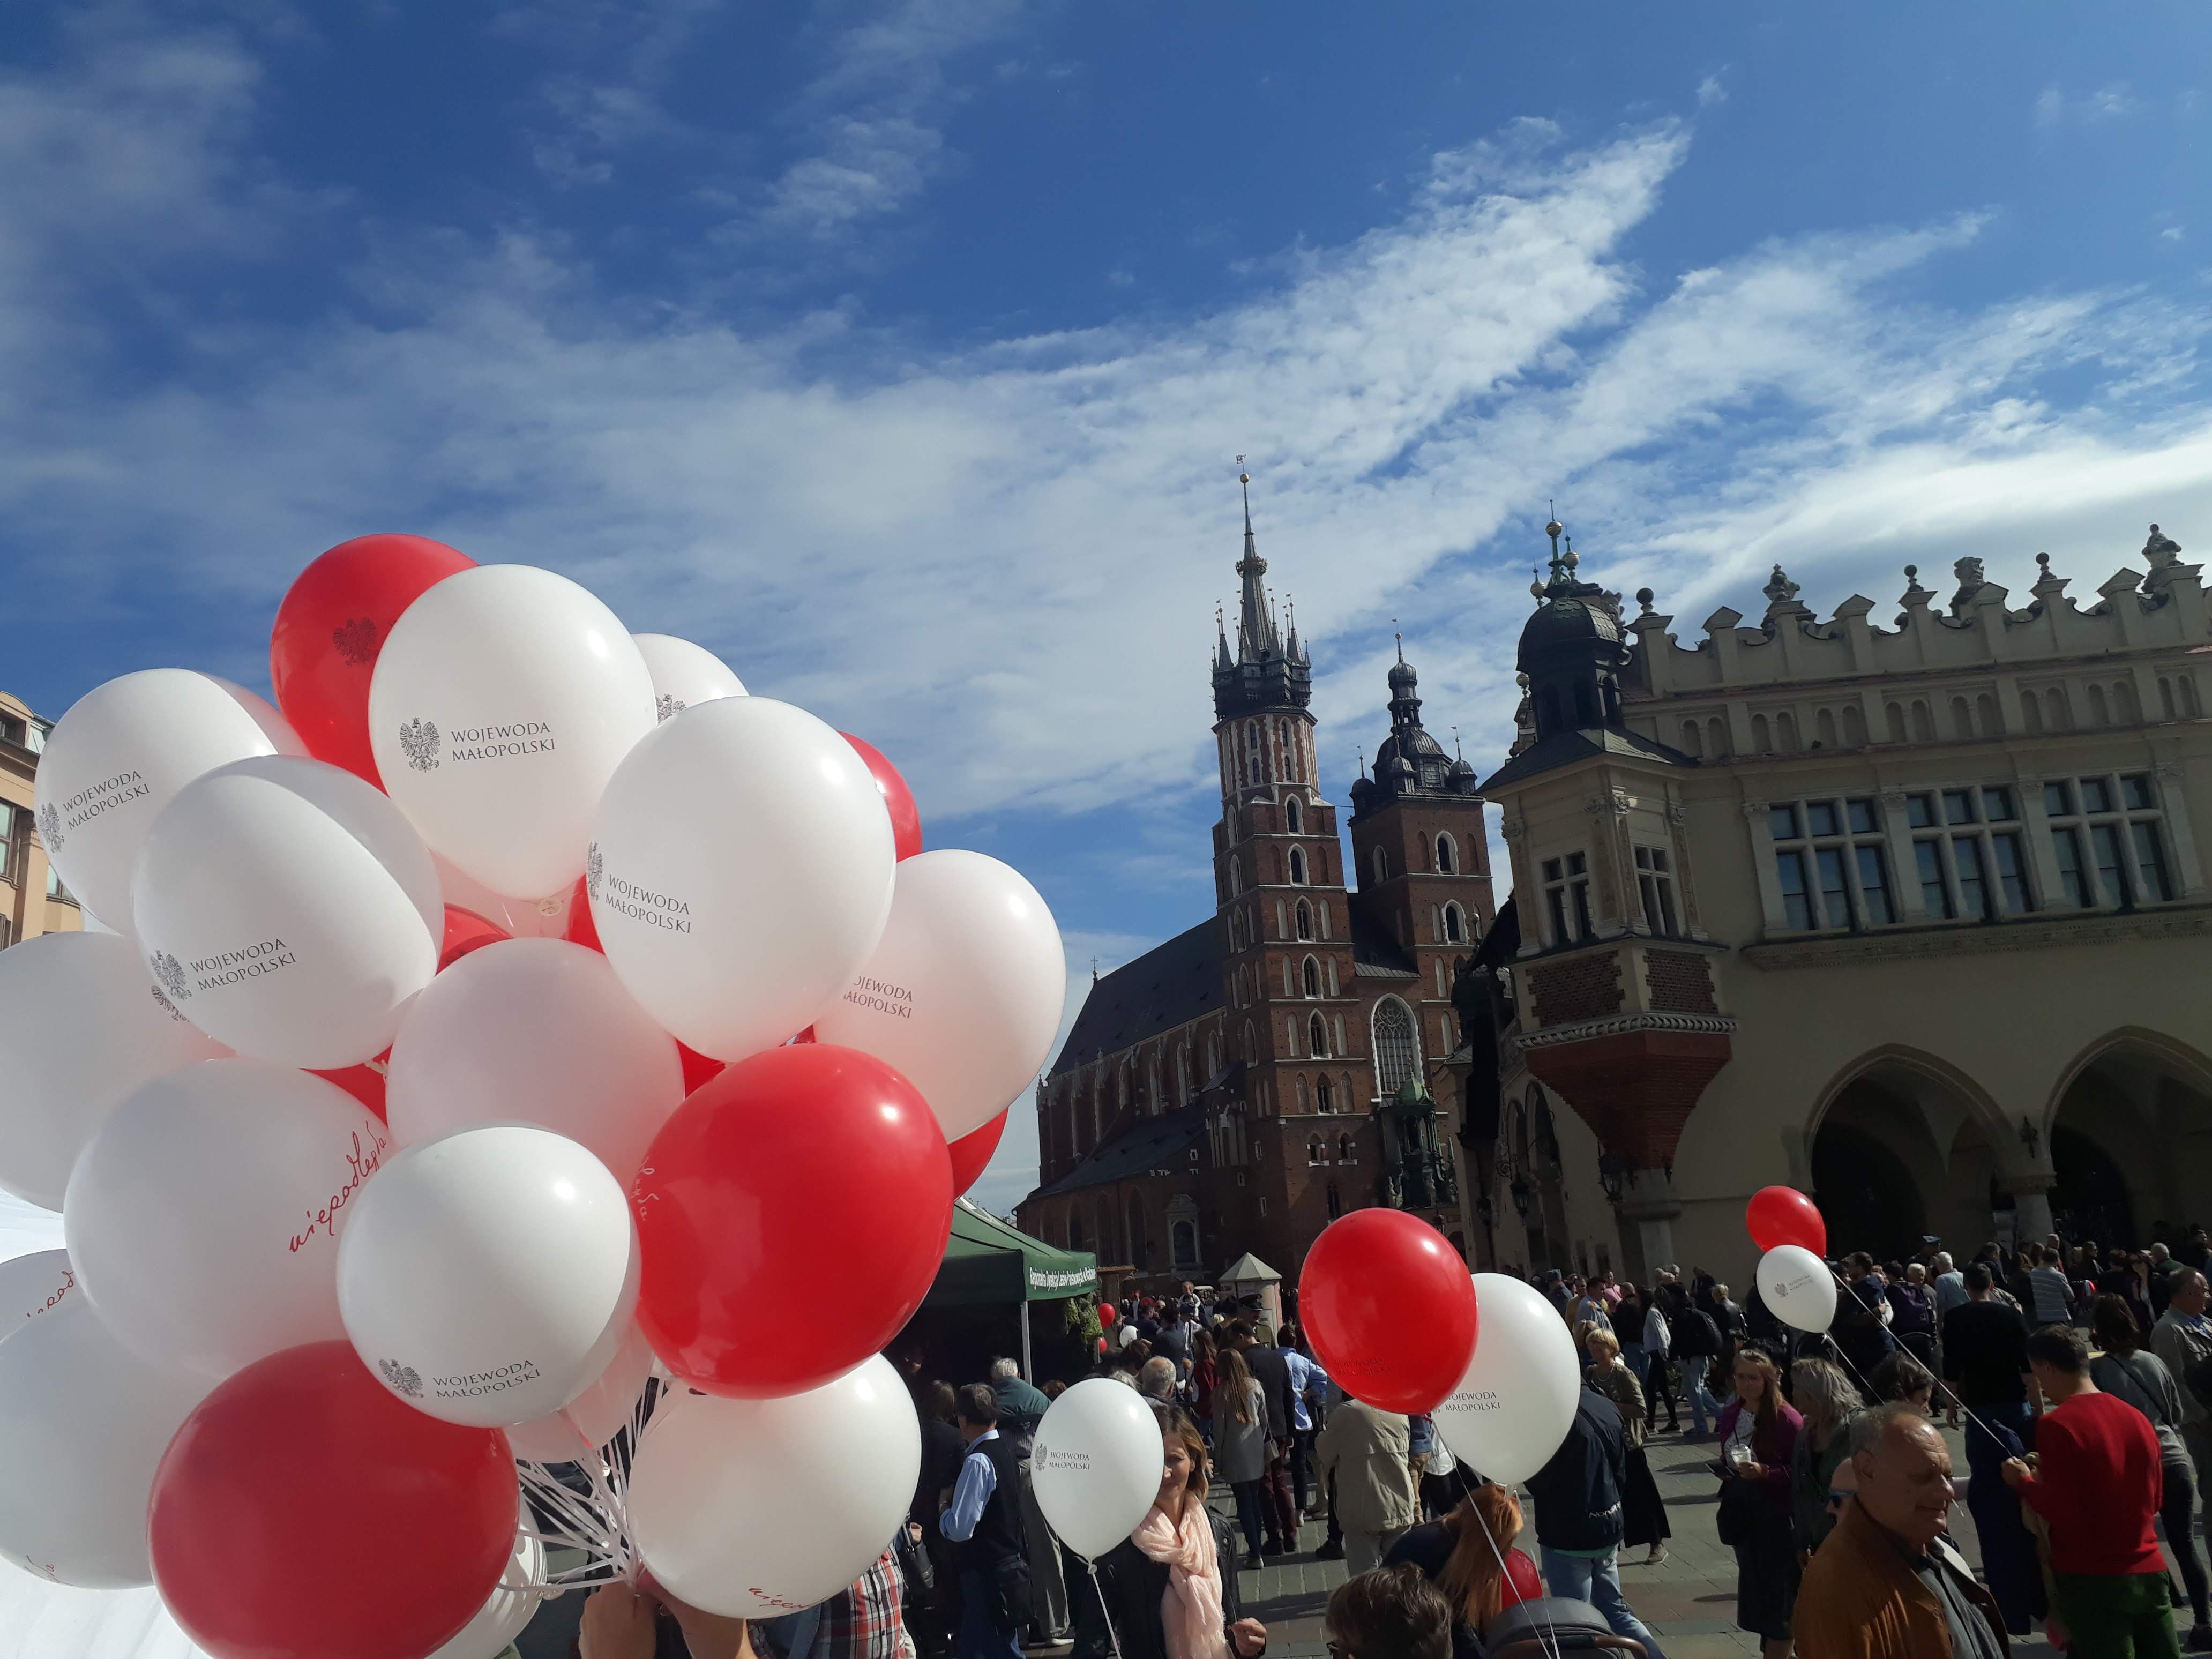 Balony z logo niepodległa na rynku krakowskim